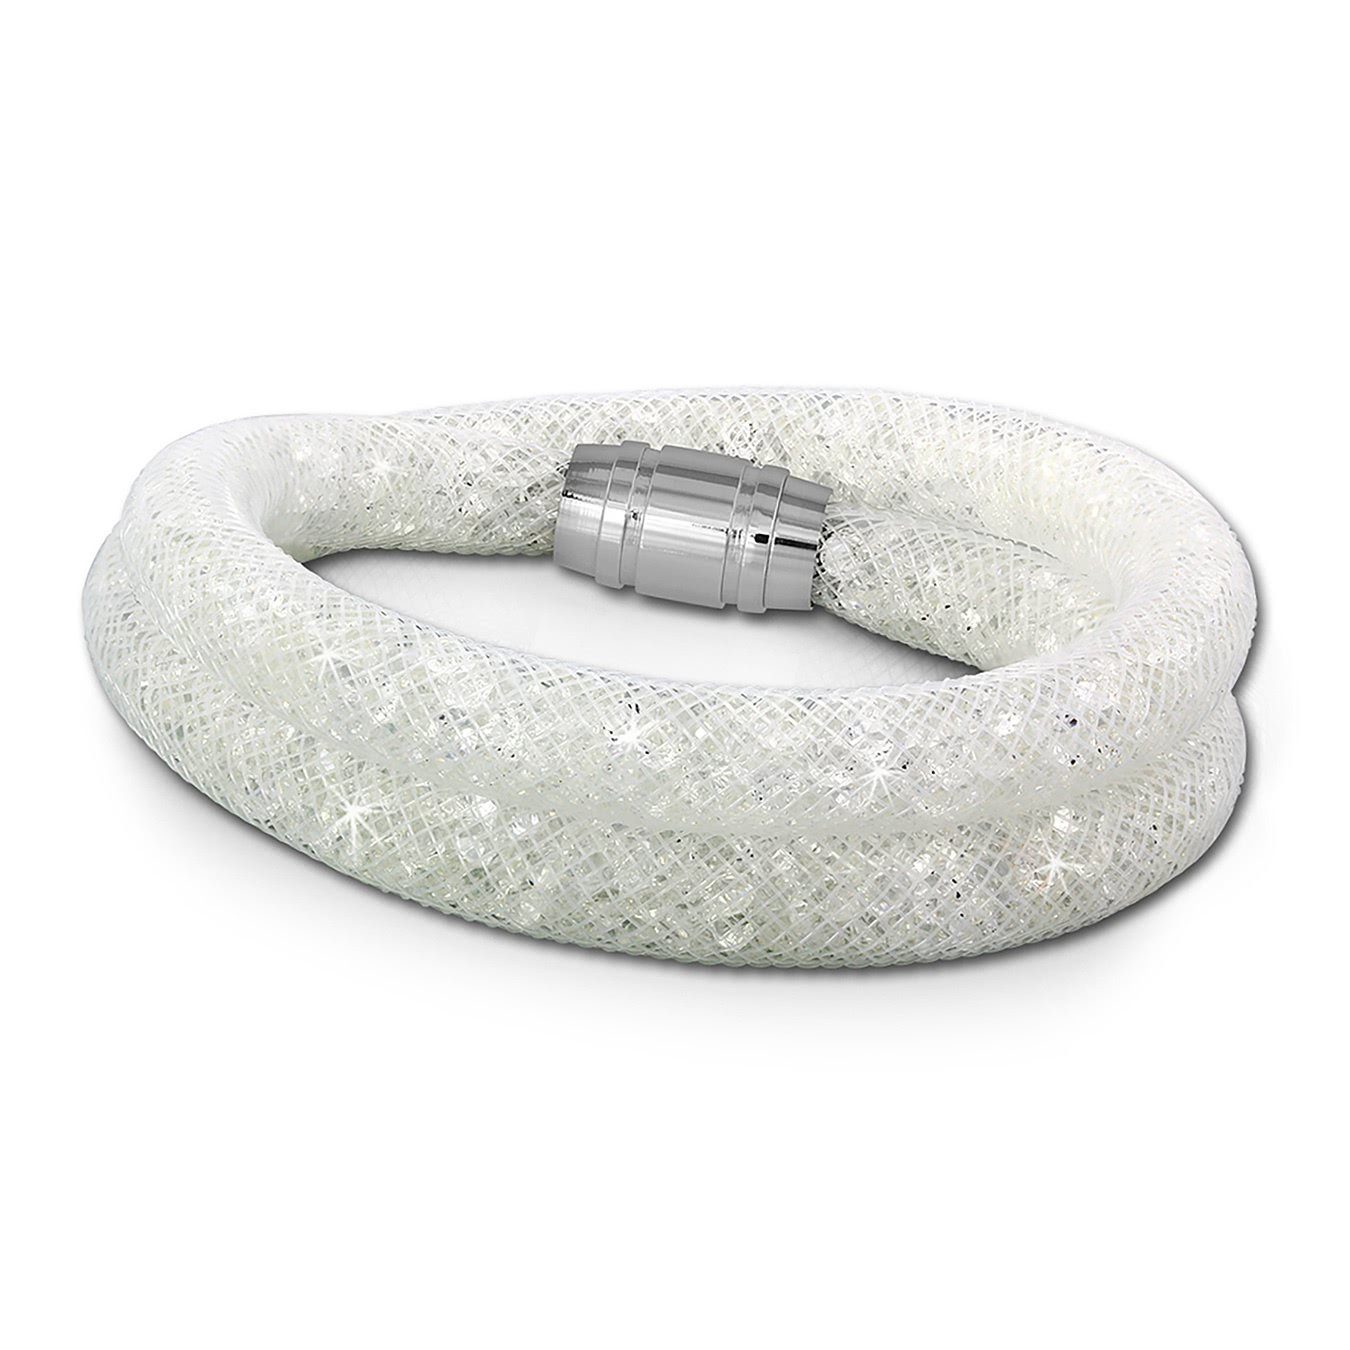 weiß Farbe: Armband SilberDream Arm-Schmuck SilberDream Kristalle weiße Edelstahlarmband (Armband), mit Edelstahl-Verschluss, weiß, Damenarmband